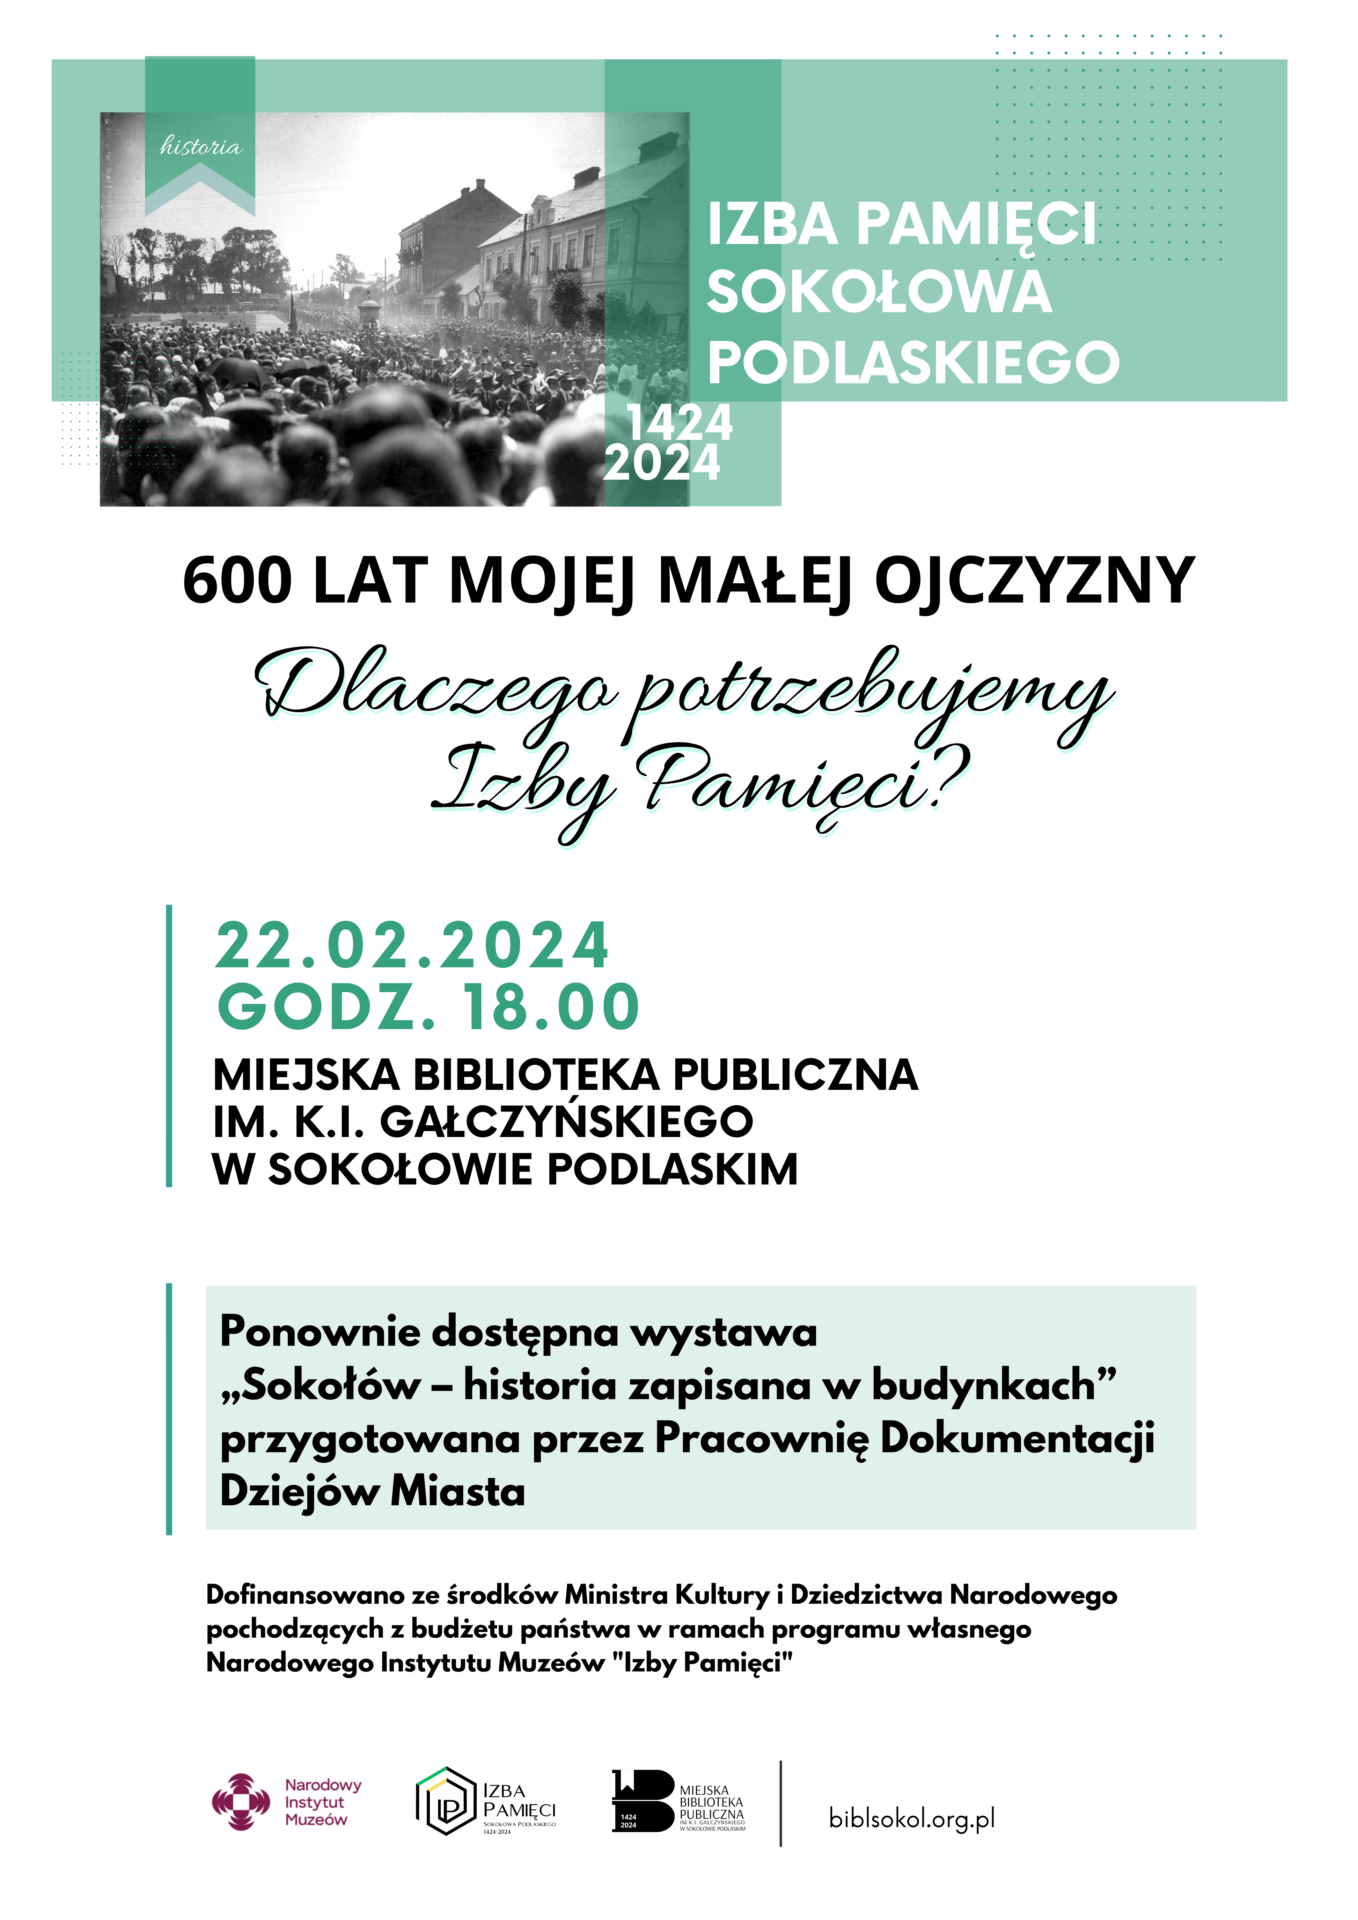 foto: zaproszenie na spotkanie w formie plakatu - Izba Pamieci Sokolowa Podlaskiego 1424 20241